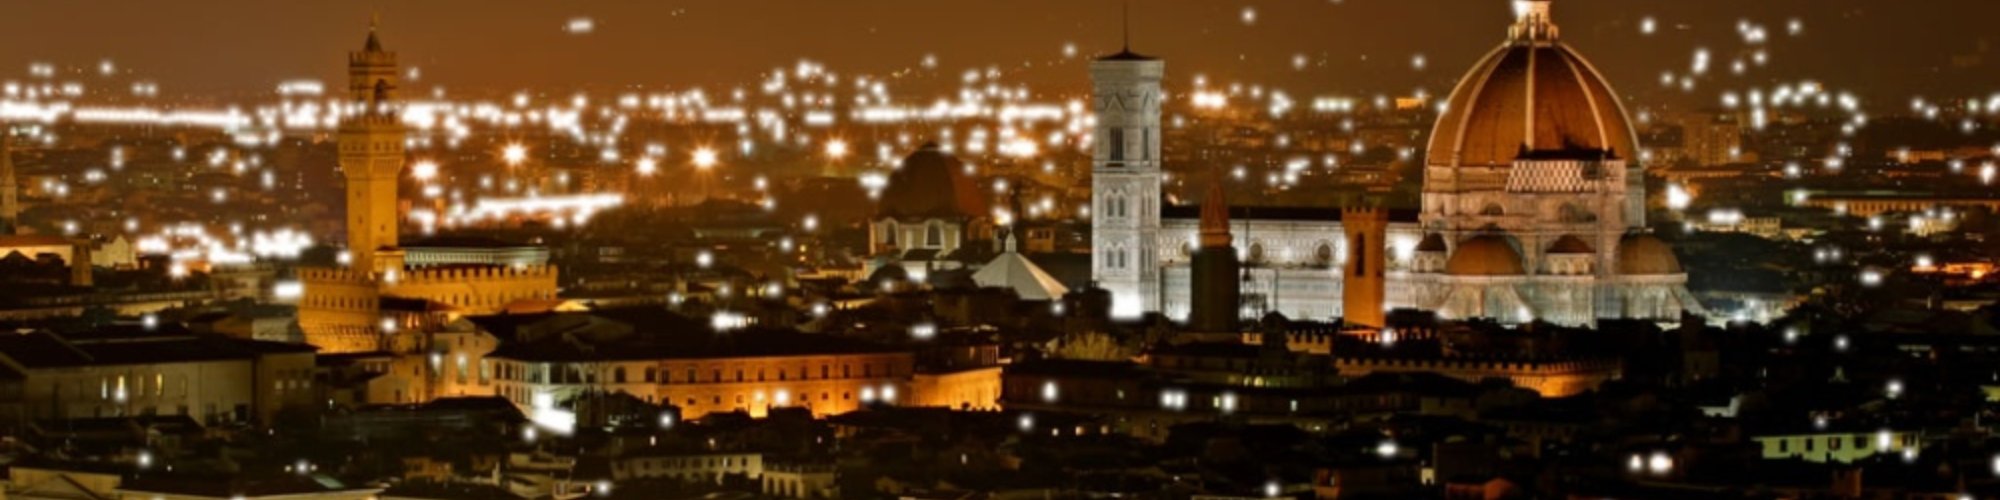 Firenze notturna